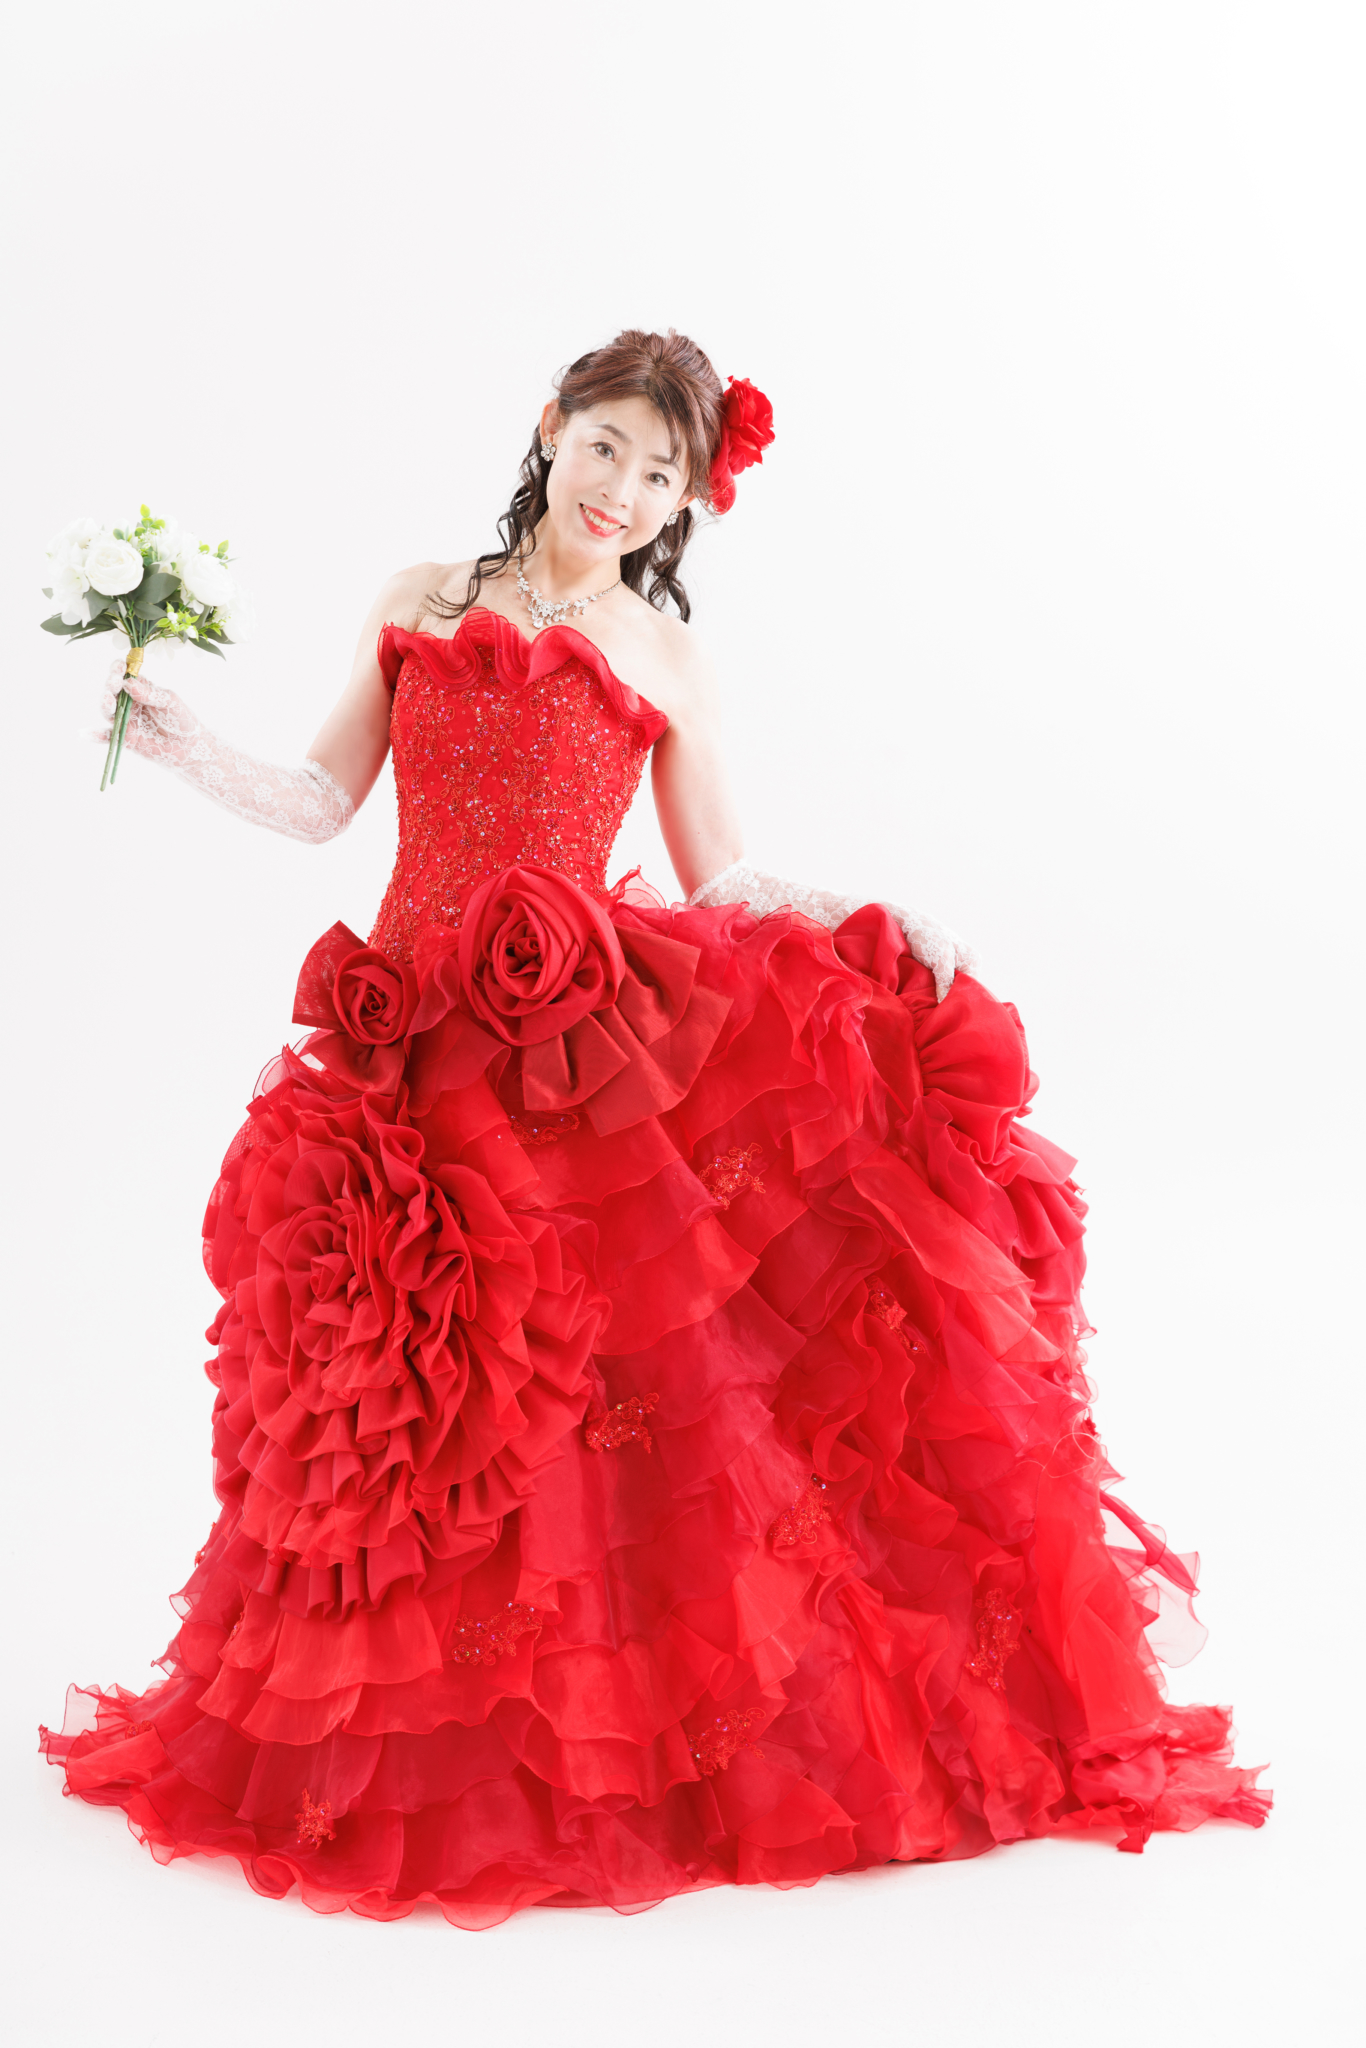 還暦に赤いドレス、古希や喜寿に紫のドレス、金婚式、銀婚式にまたドレスを着て記念の写真を